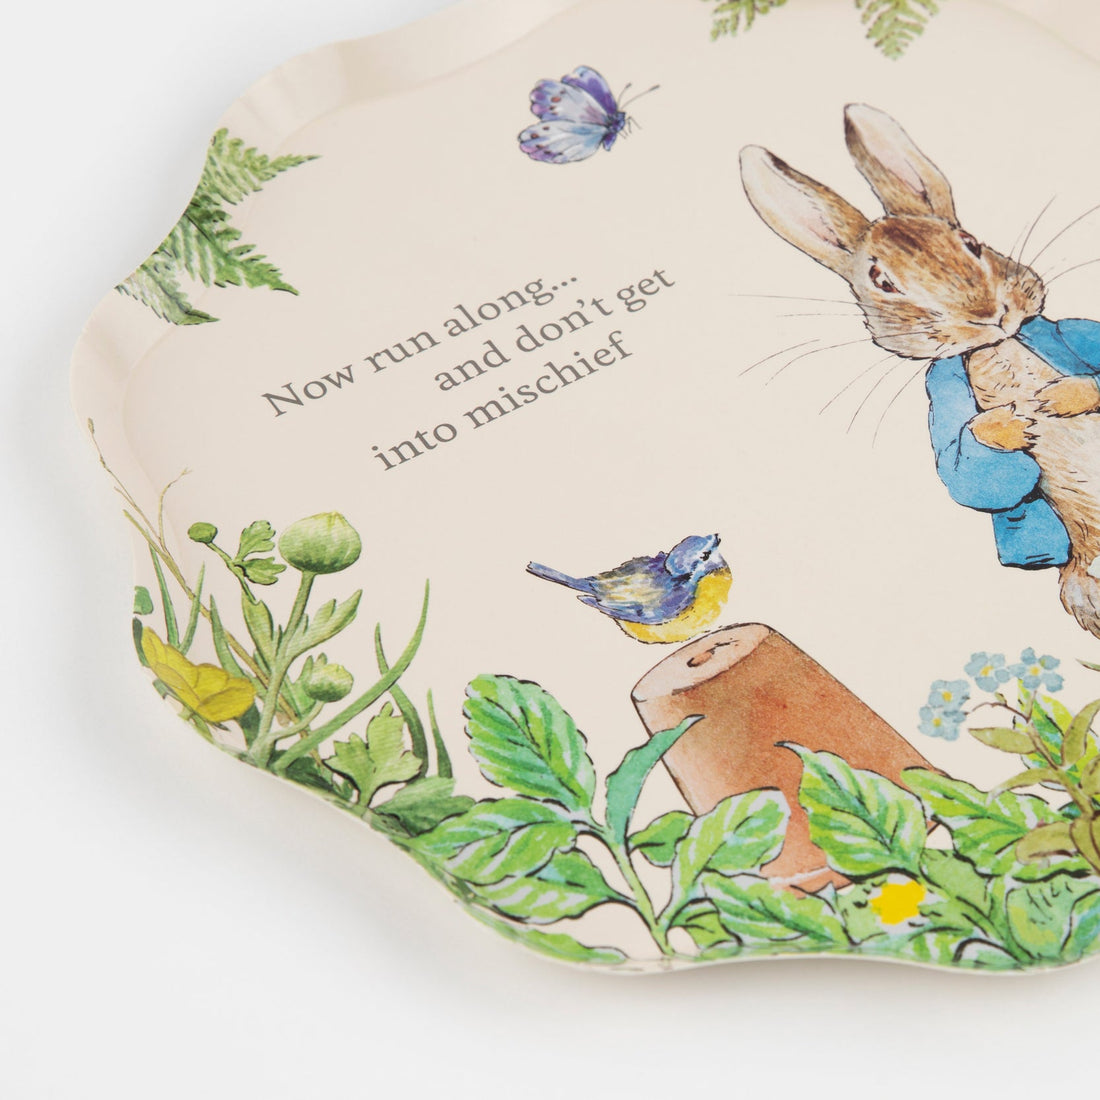 Peter Rabbit in the Garden Plates